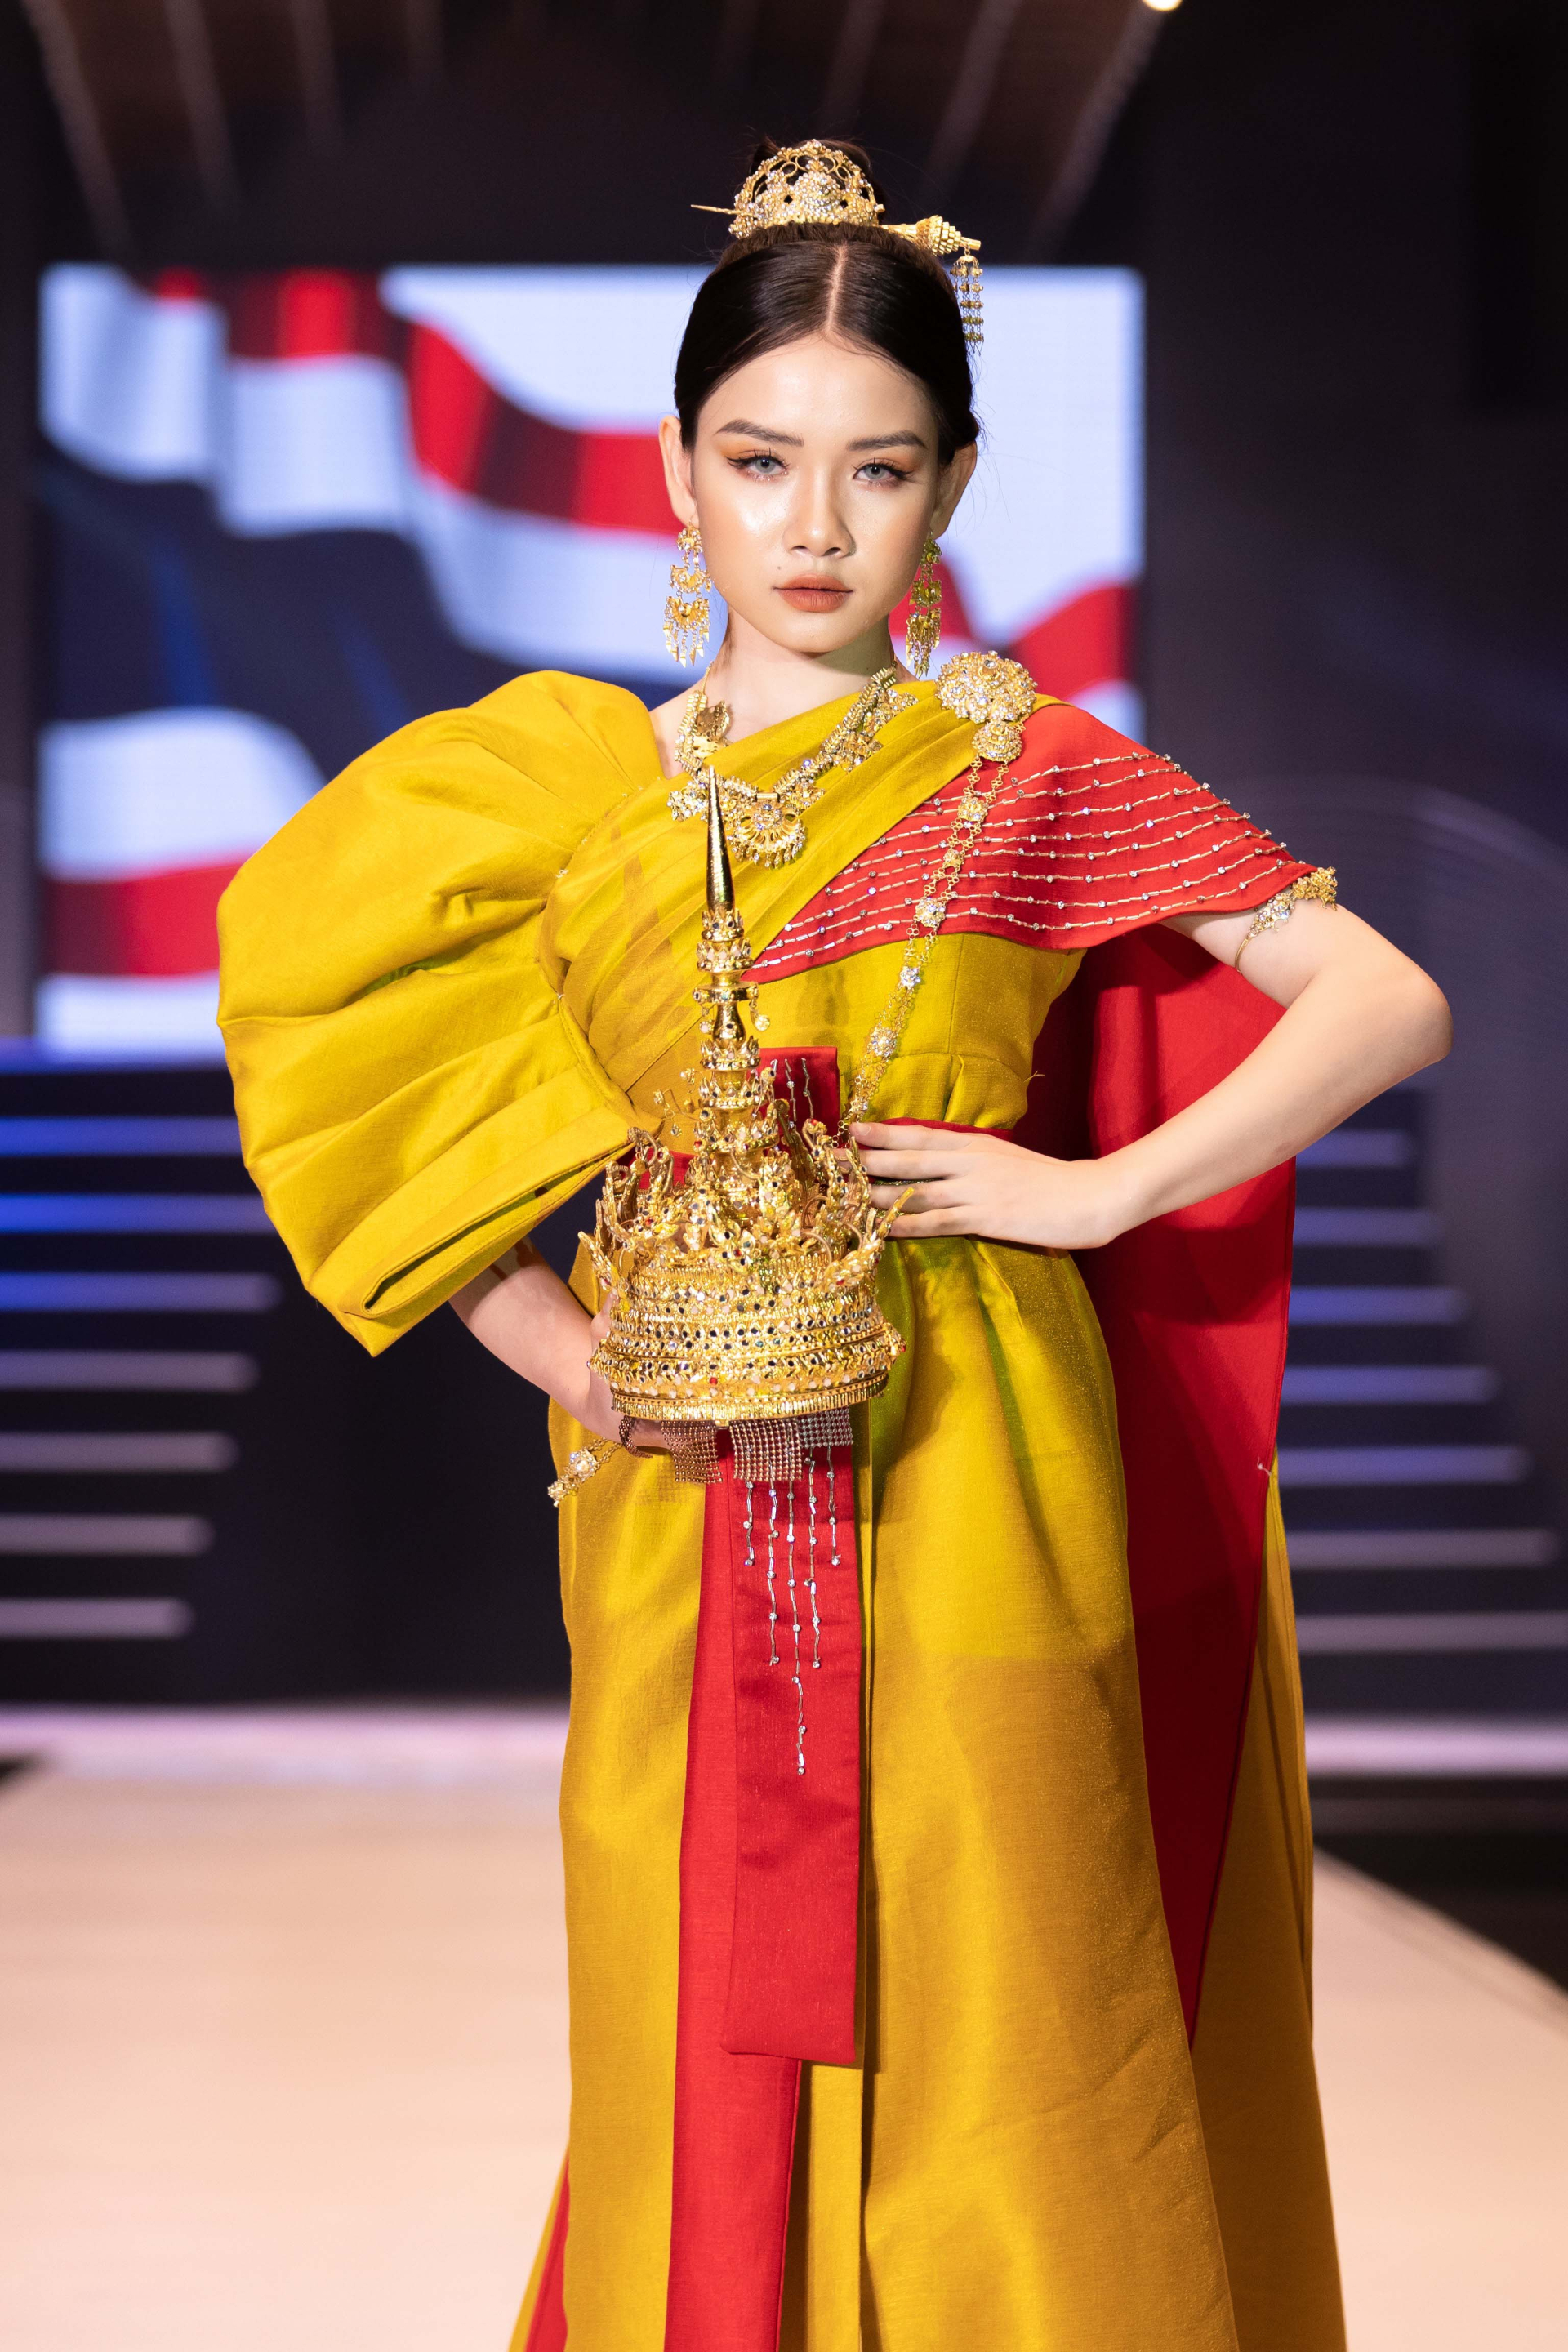 Mẫu nhí mở màn ấn tượng tại Đại hội Siêu mẫu nhí cùng trang phục lấy ý tưởng từ xứ sở chùa Vàng - ảnh 4